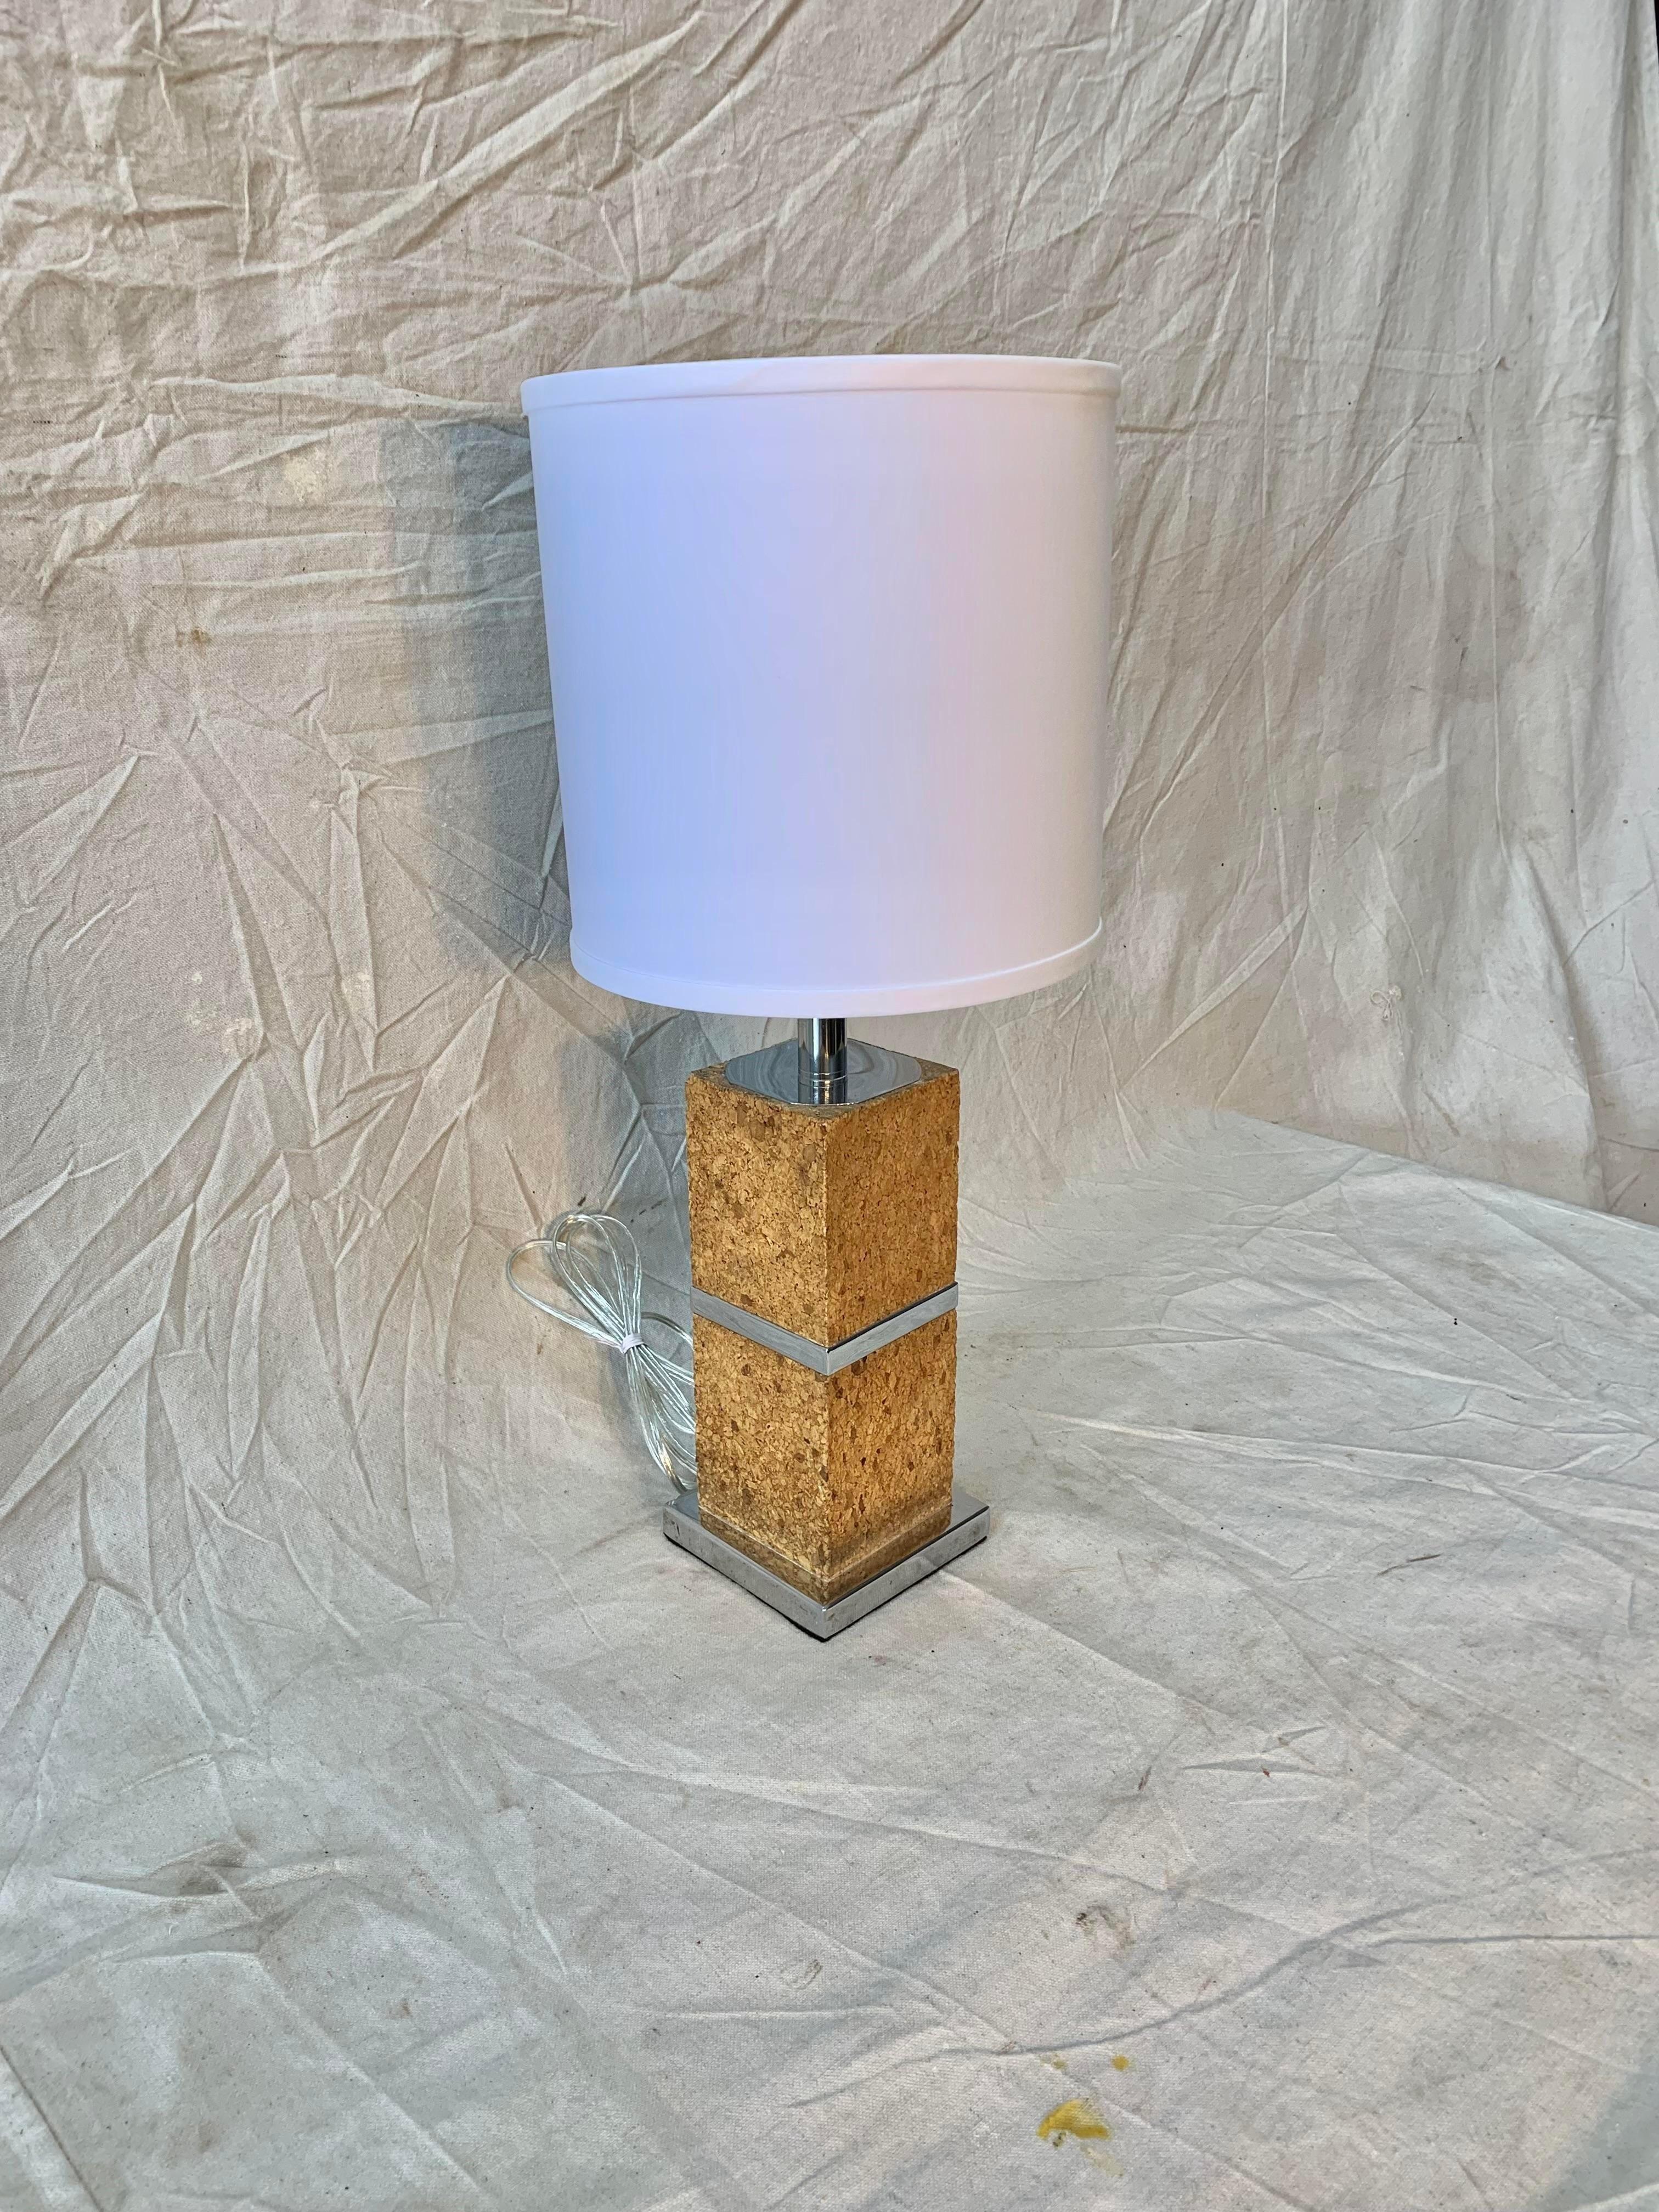 Cette lampe de table en liège et chrome a été fabriquée dans les années 1970. La lampe se compose d'une base carrée chromée surmontée d'une colonne carrée en liège avec une bande chromée au milieu. Dans les années 1970, le liège était l'un des